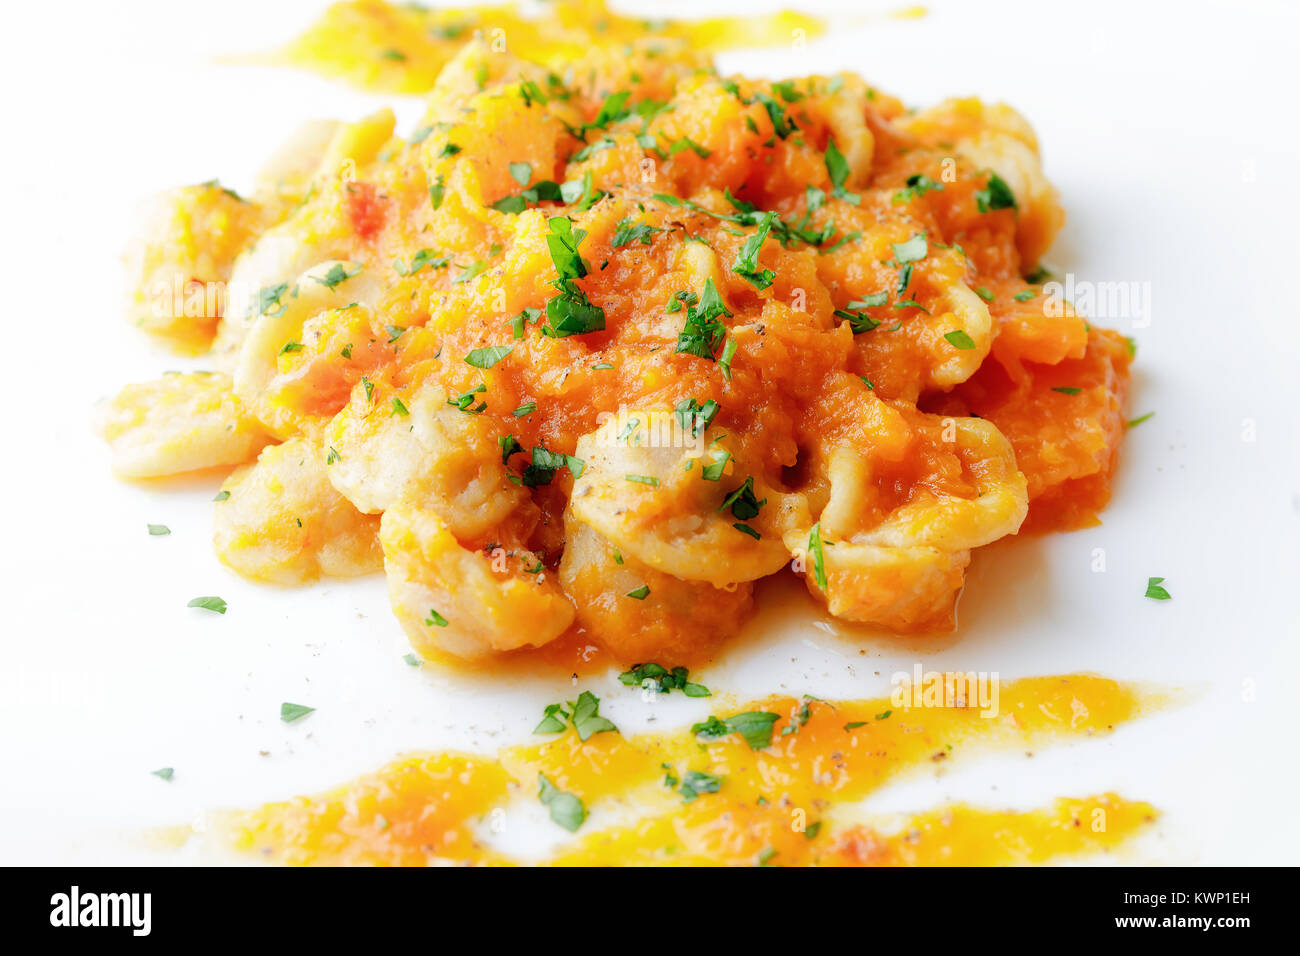 Bereit Teller Pasta mit Kürbis, Tomaten, Öl und Petersilie. Weiße Platte auf einem weißen Hintergrund. Italienische Küche. Stockfoto